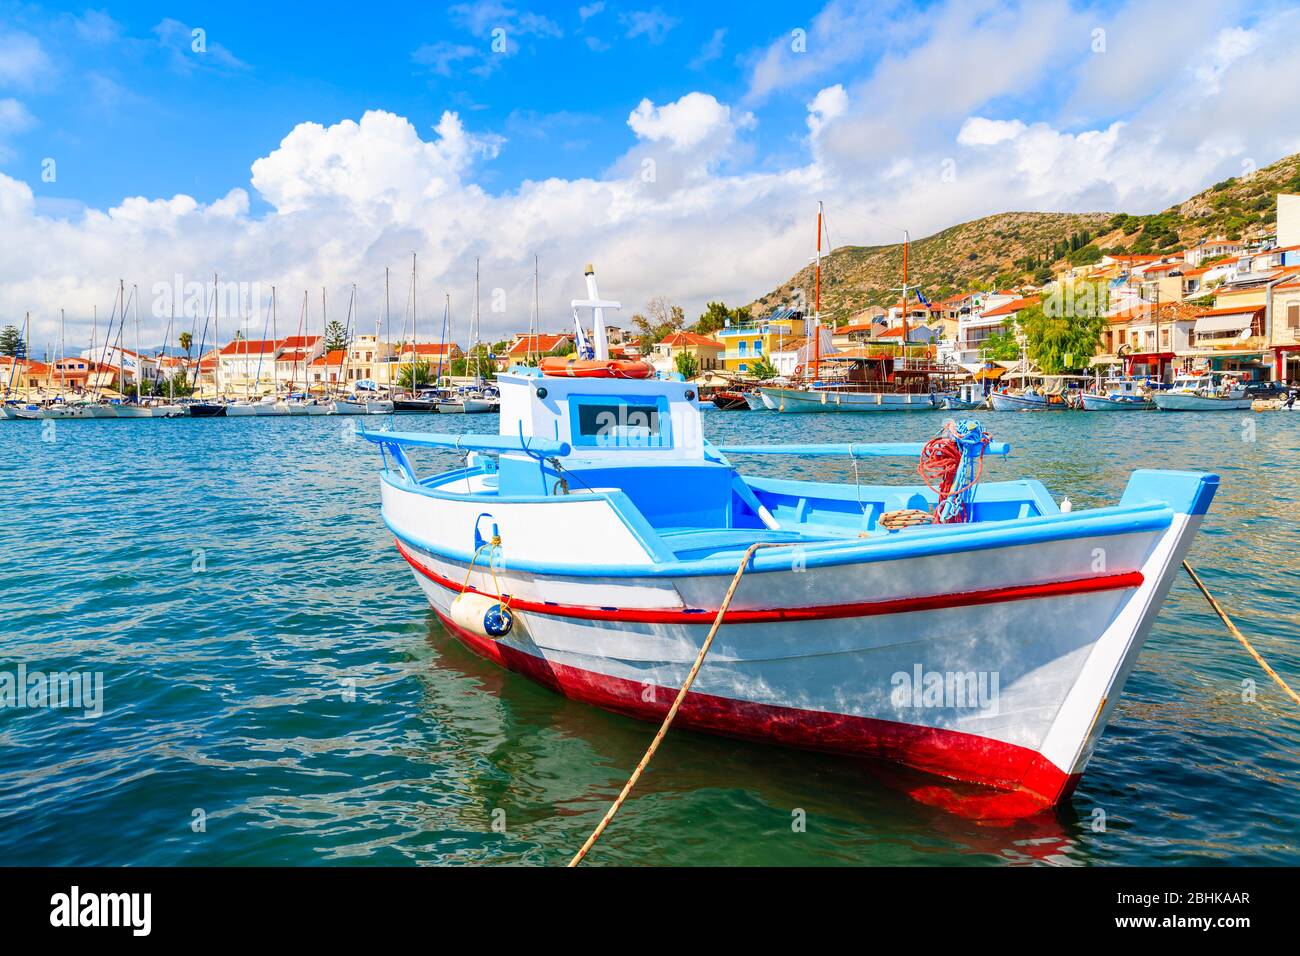 Bateau de pêche typique coloré dans le port de Pythagorion, île de Samos, mer Égée, Grèce Banque D'Images